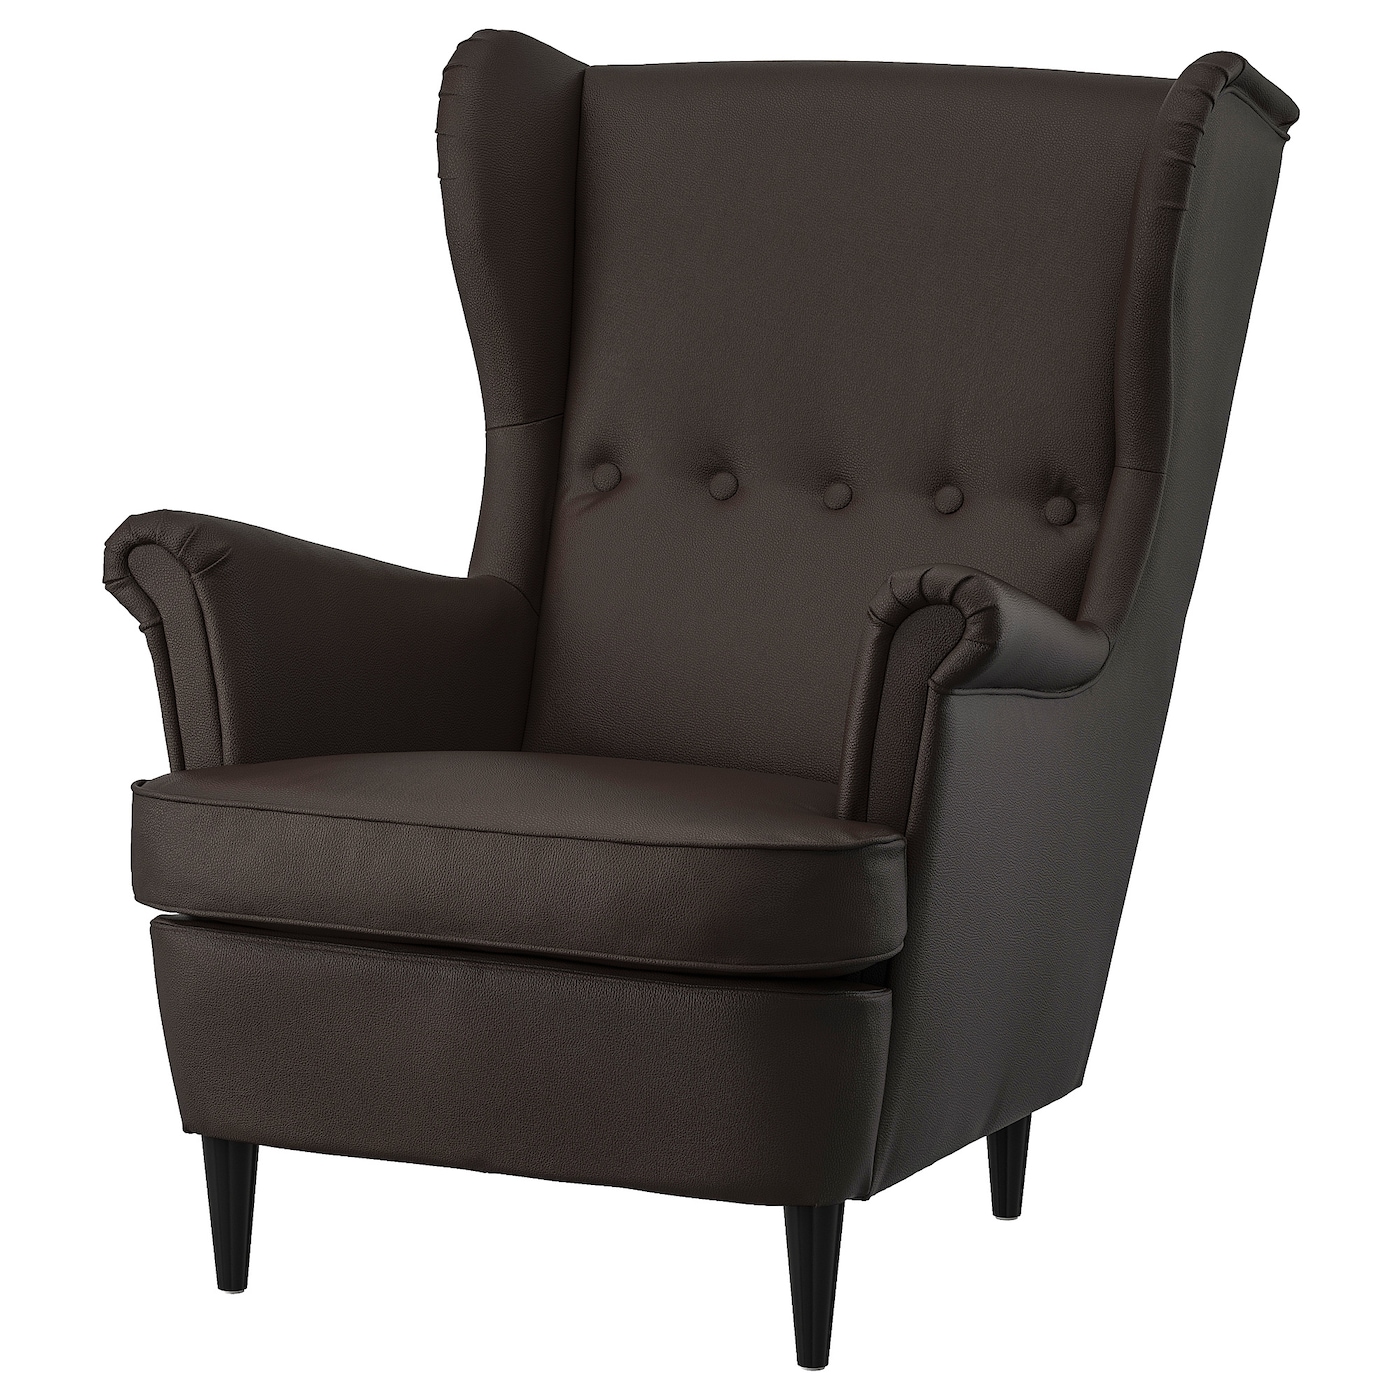 СТРАНДМОН Кресло, Гранн/Бомстад темно-коричневый STRANDMON IKEA офисная мебель современного дизайна с высокой спинкой роскошное офисное кресло из натуральной кожи регулируемое удобное игровое кресло